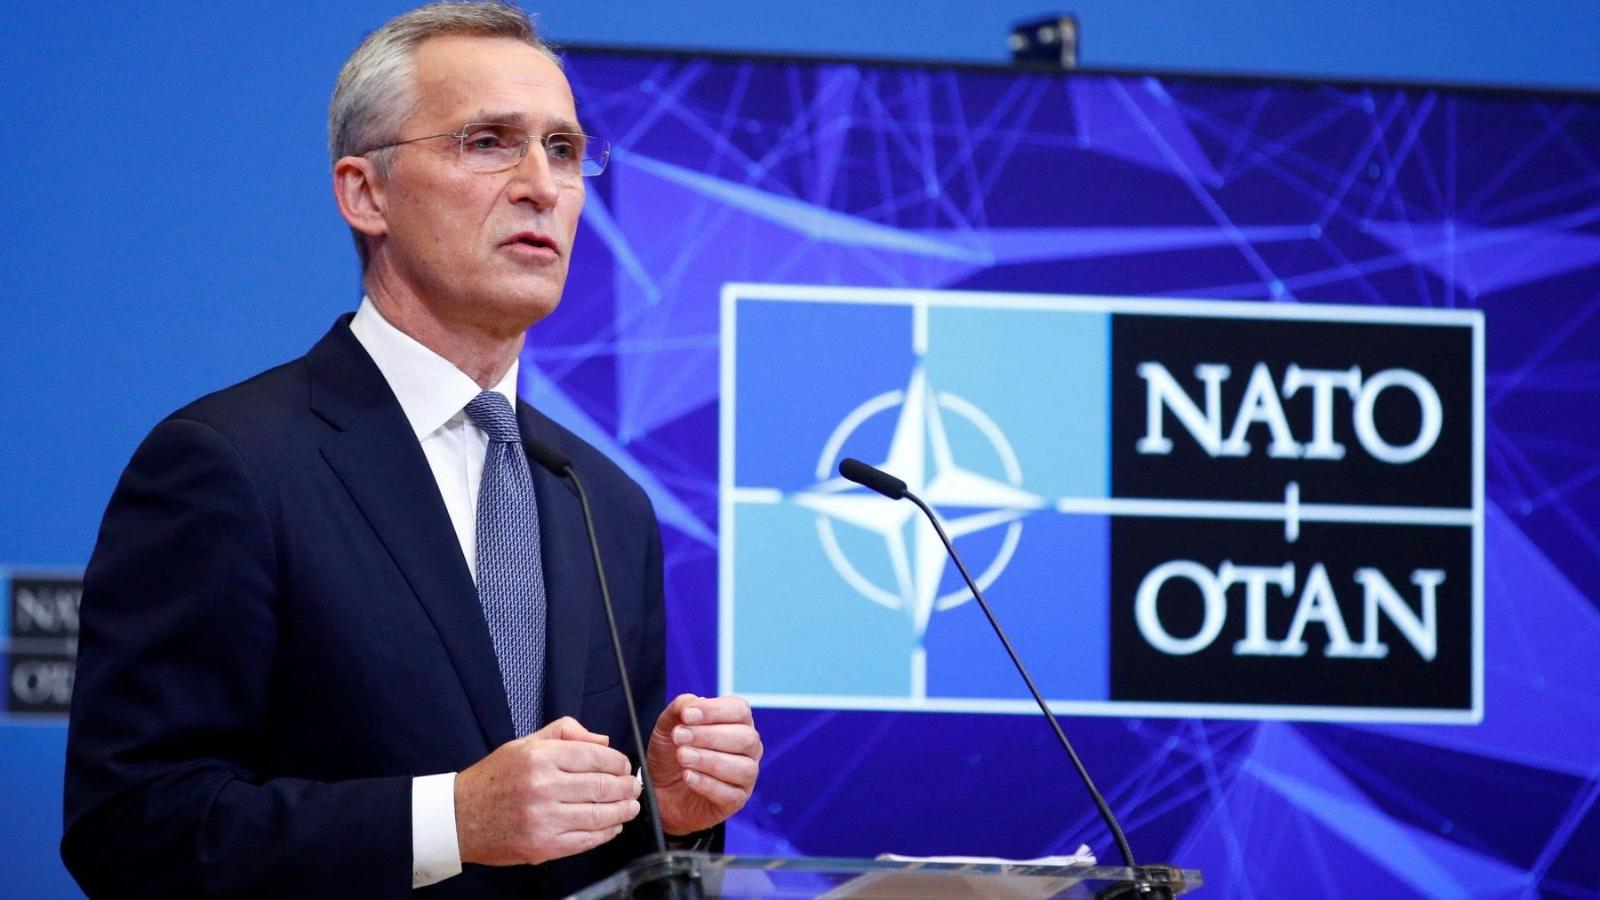 Il Segretario Generale NATO Stoltenberg a Che Tempo Che Fa ...